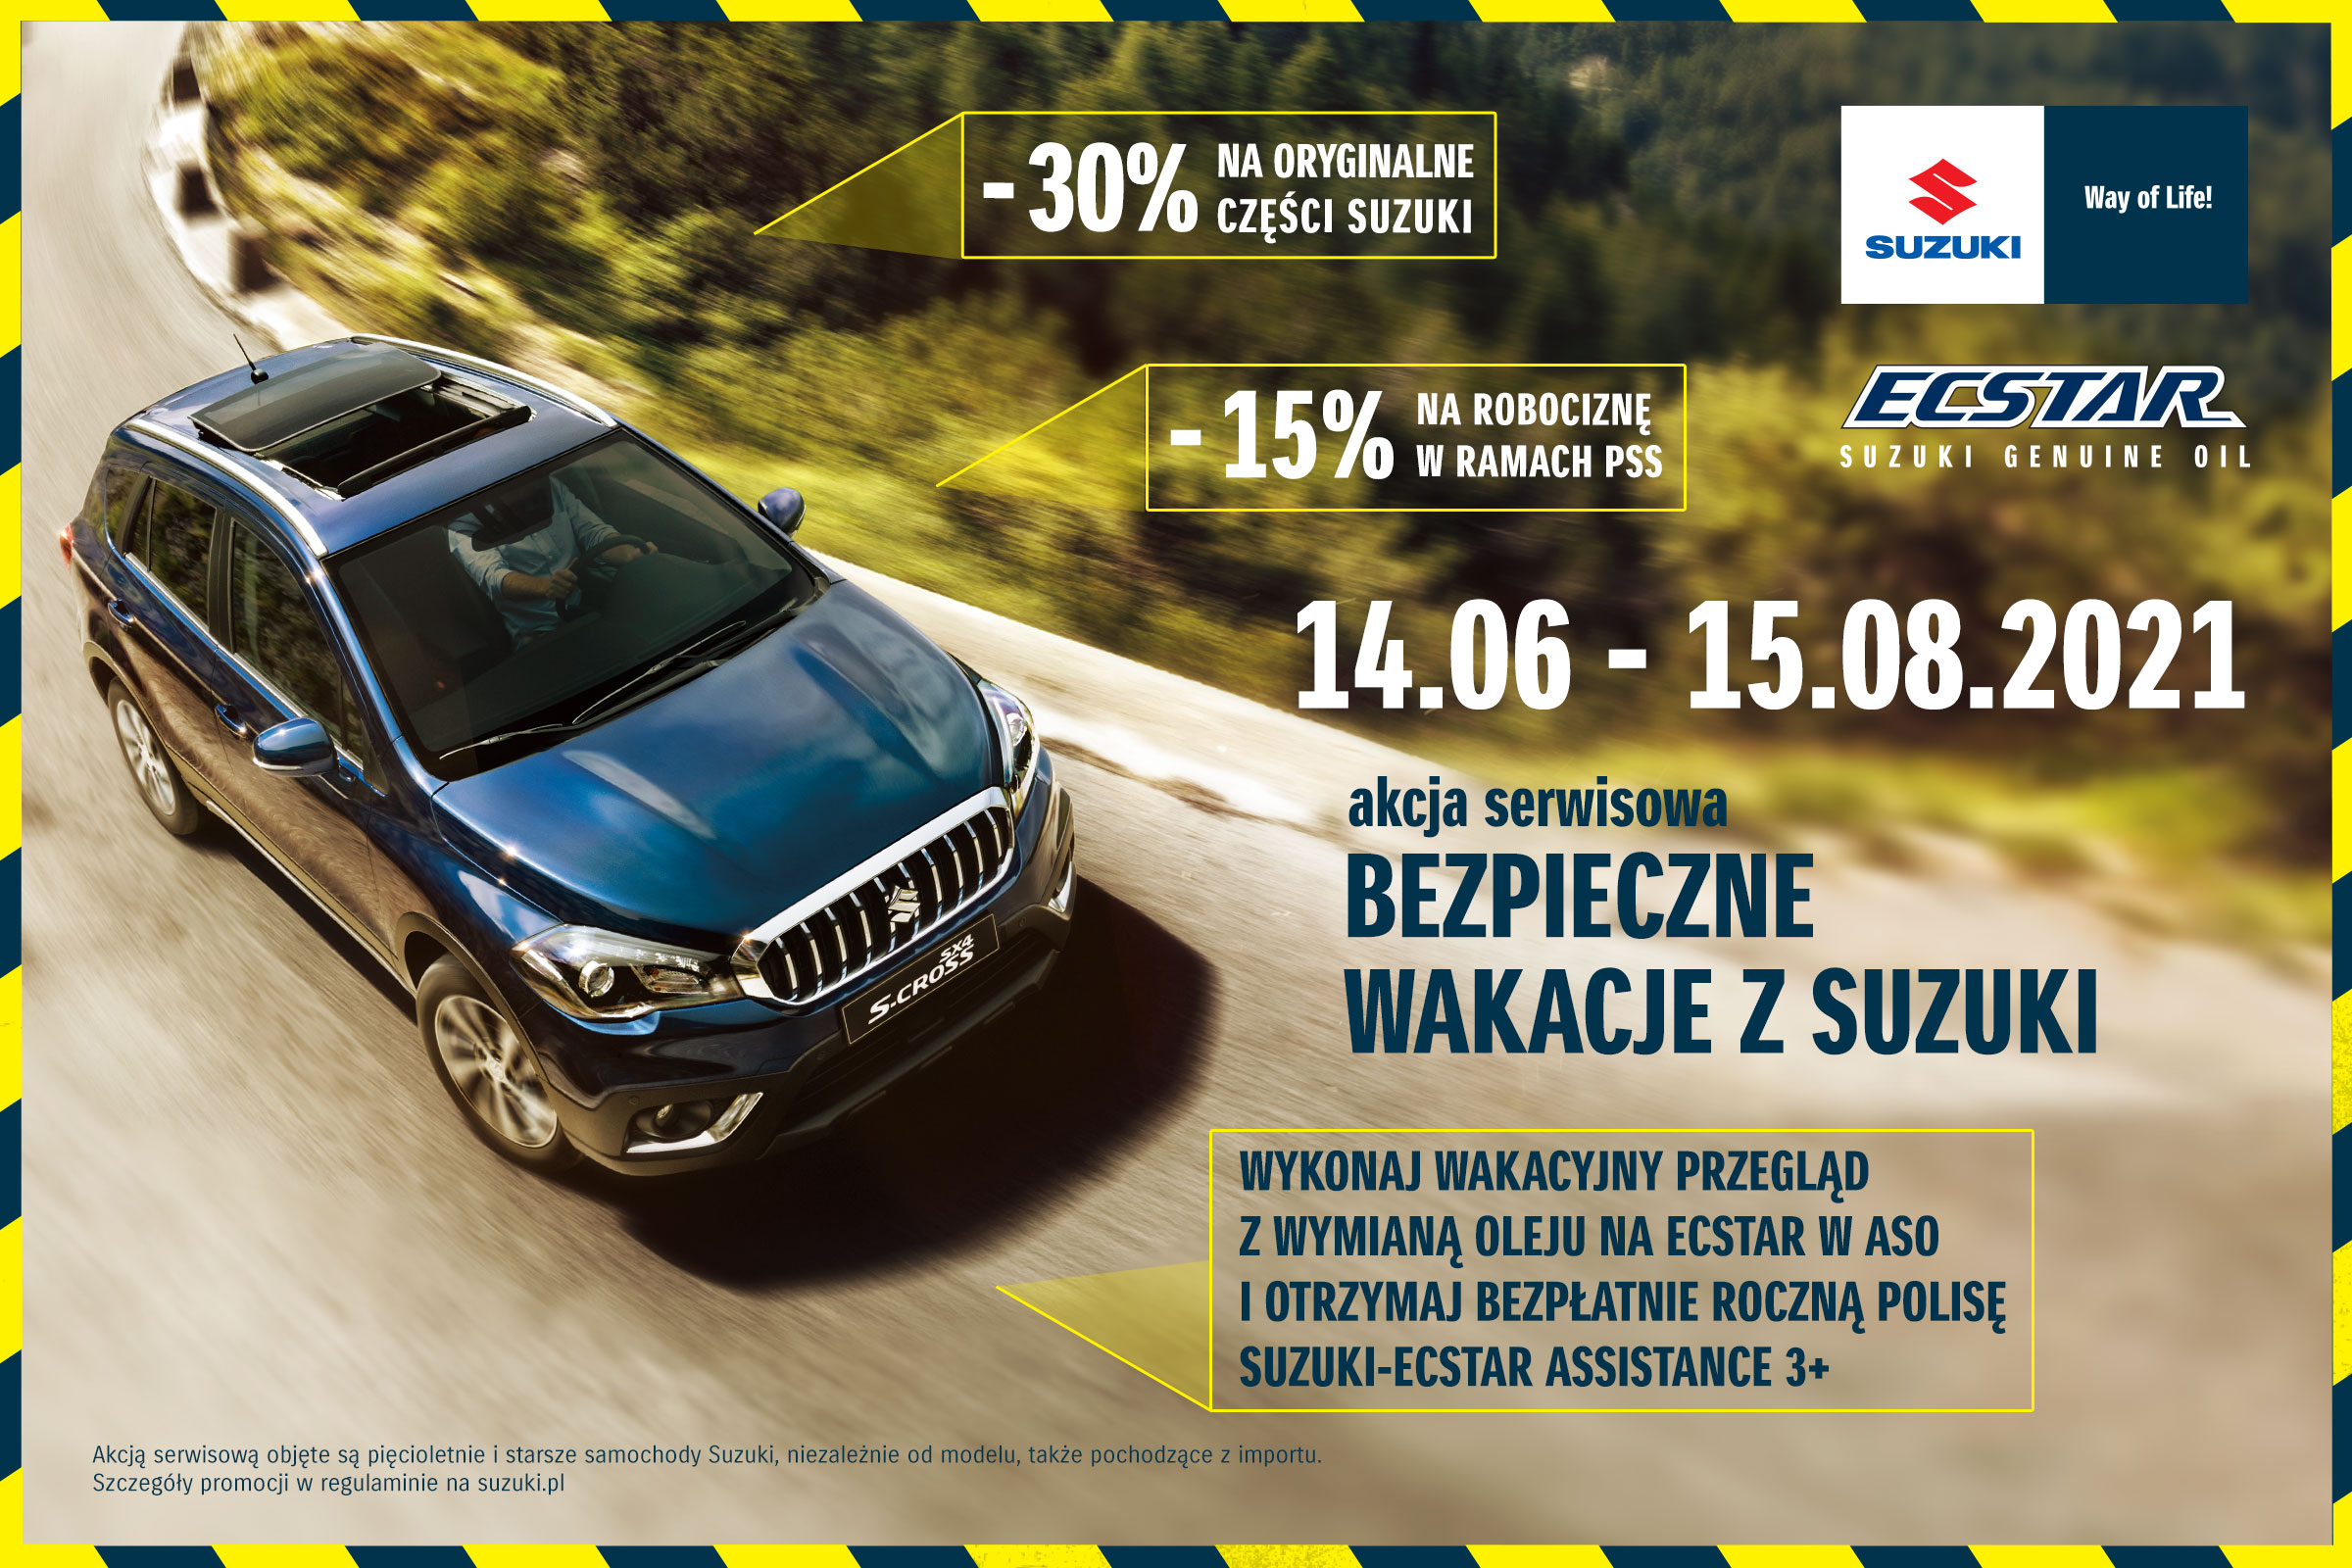 Rusza akcja serwisowa "Bezpieczne wakacje z Suzuki" AUTO